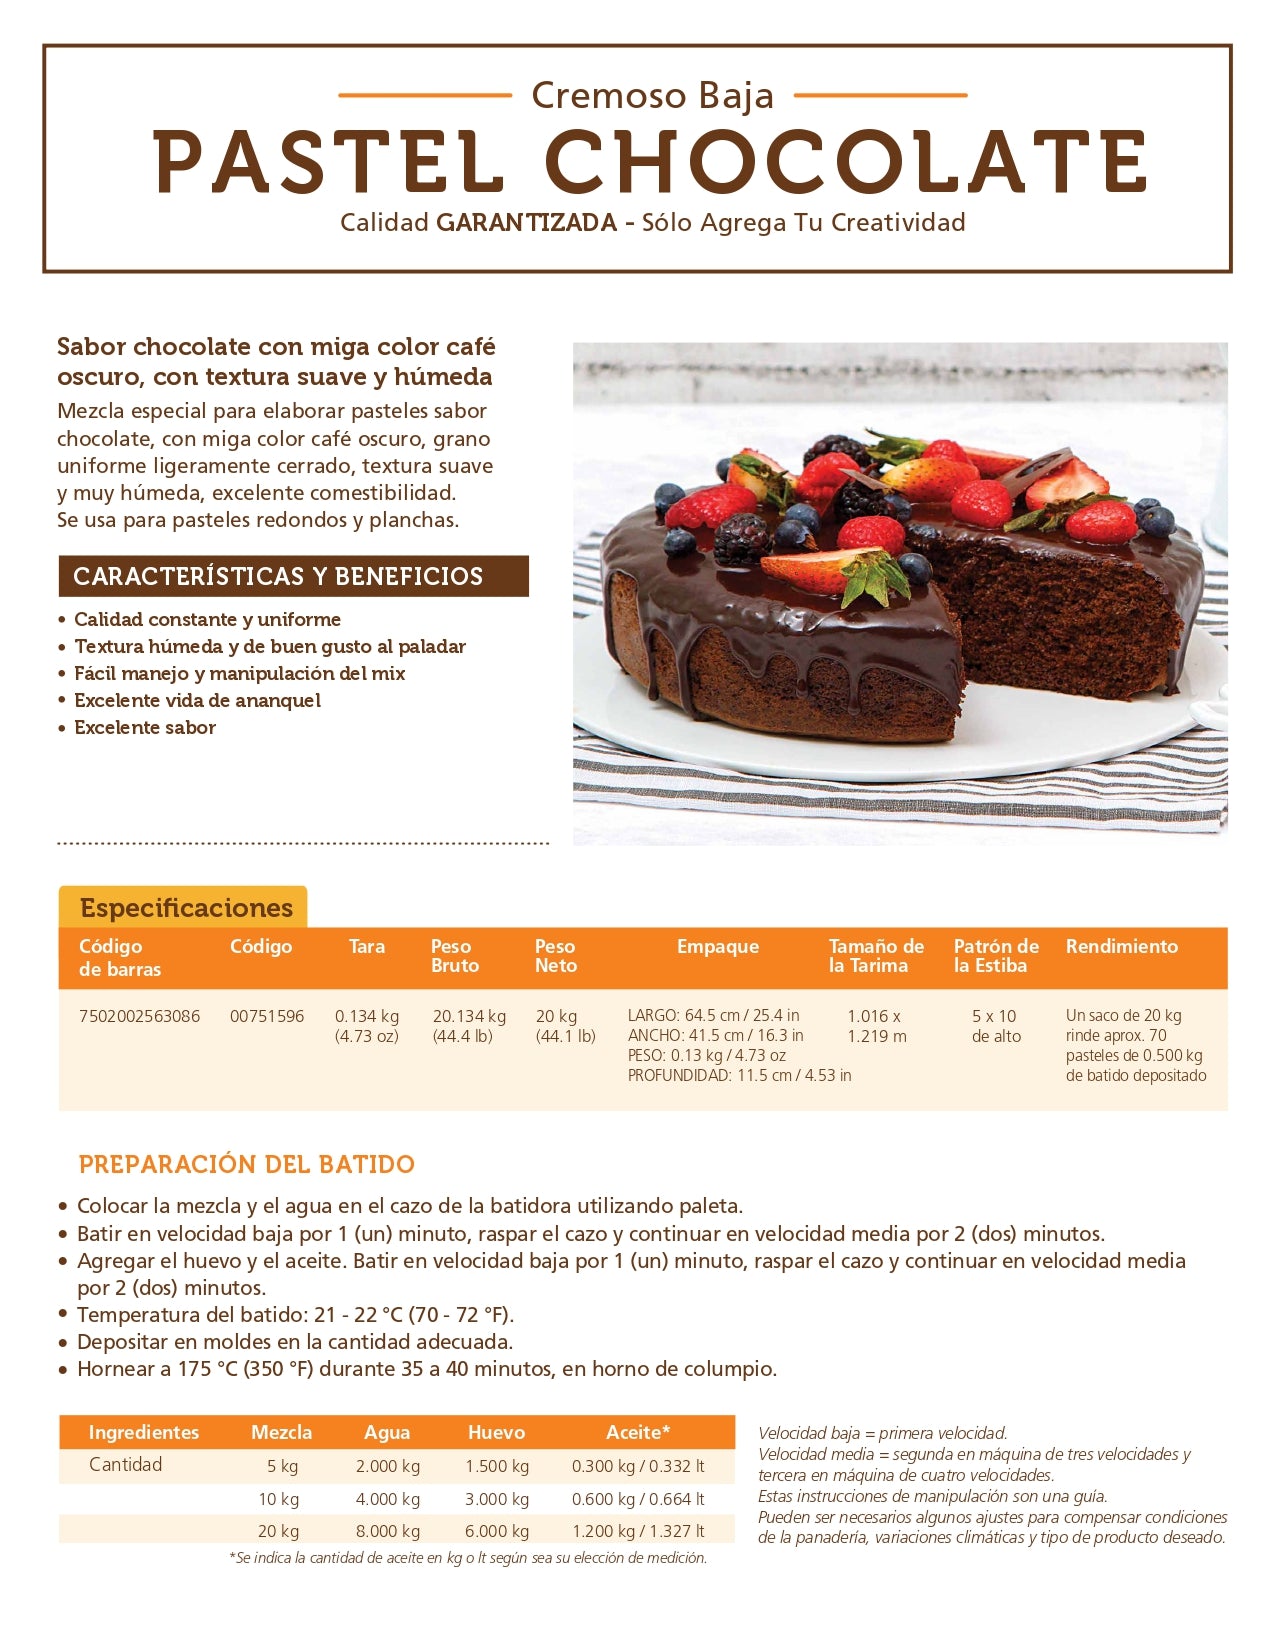 Harina Dawn Chocolate Cremosa Baja 1 kilo – Cake Studio Mty